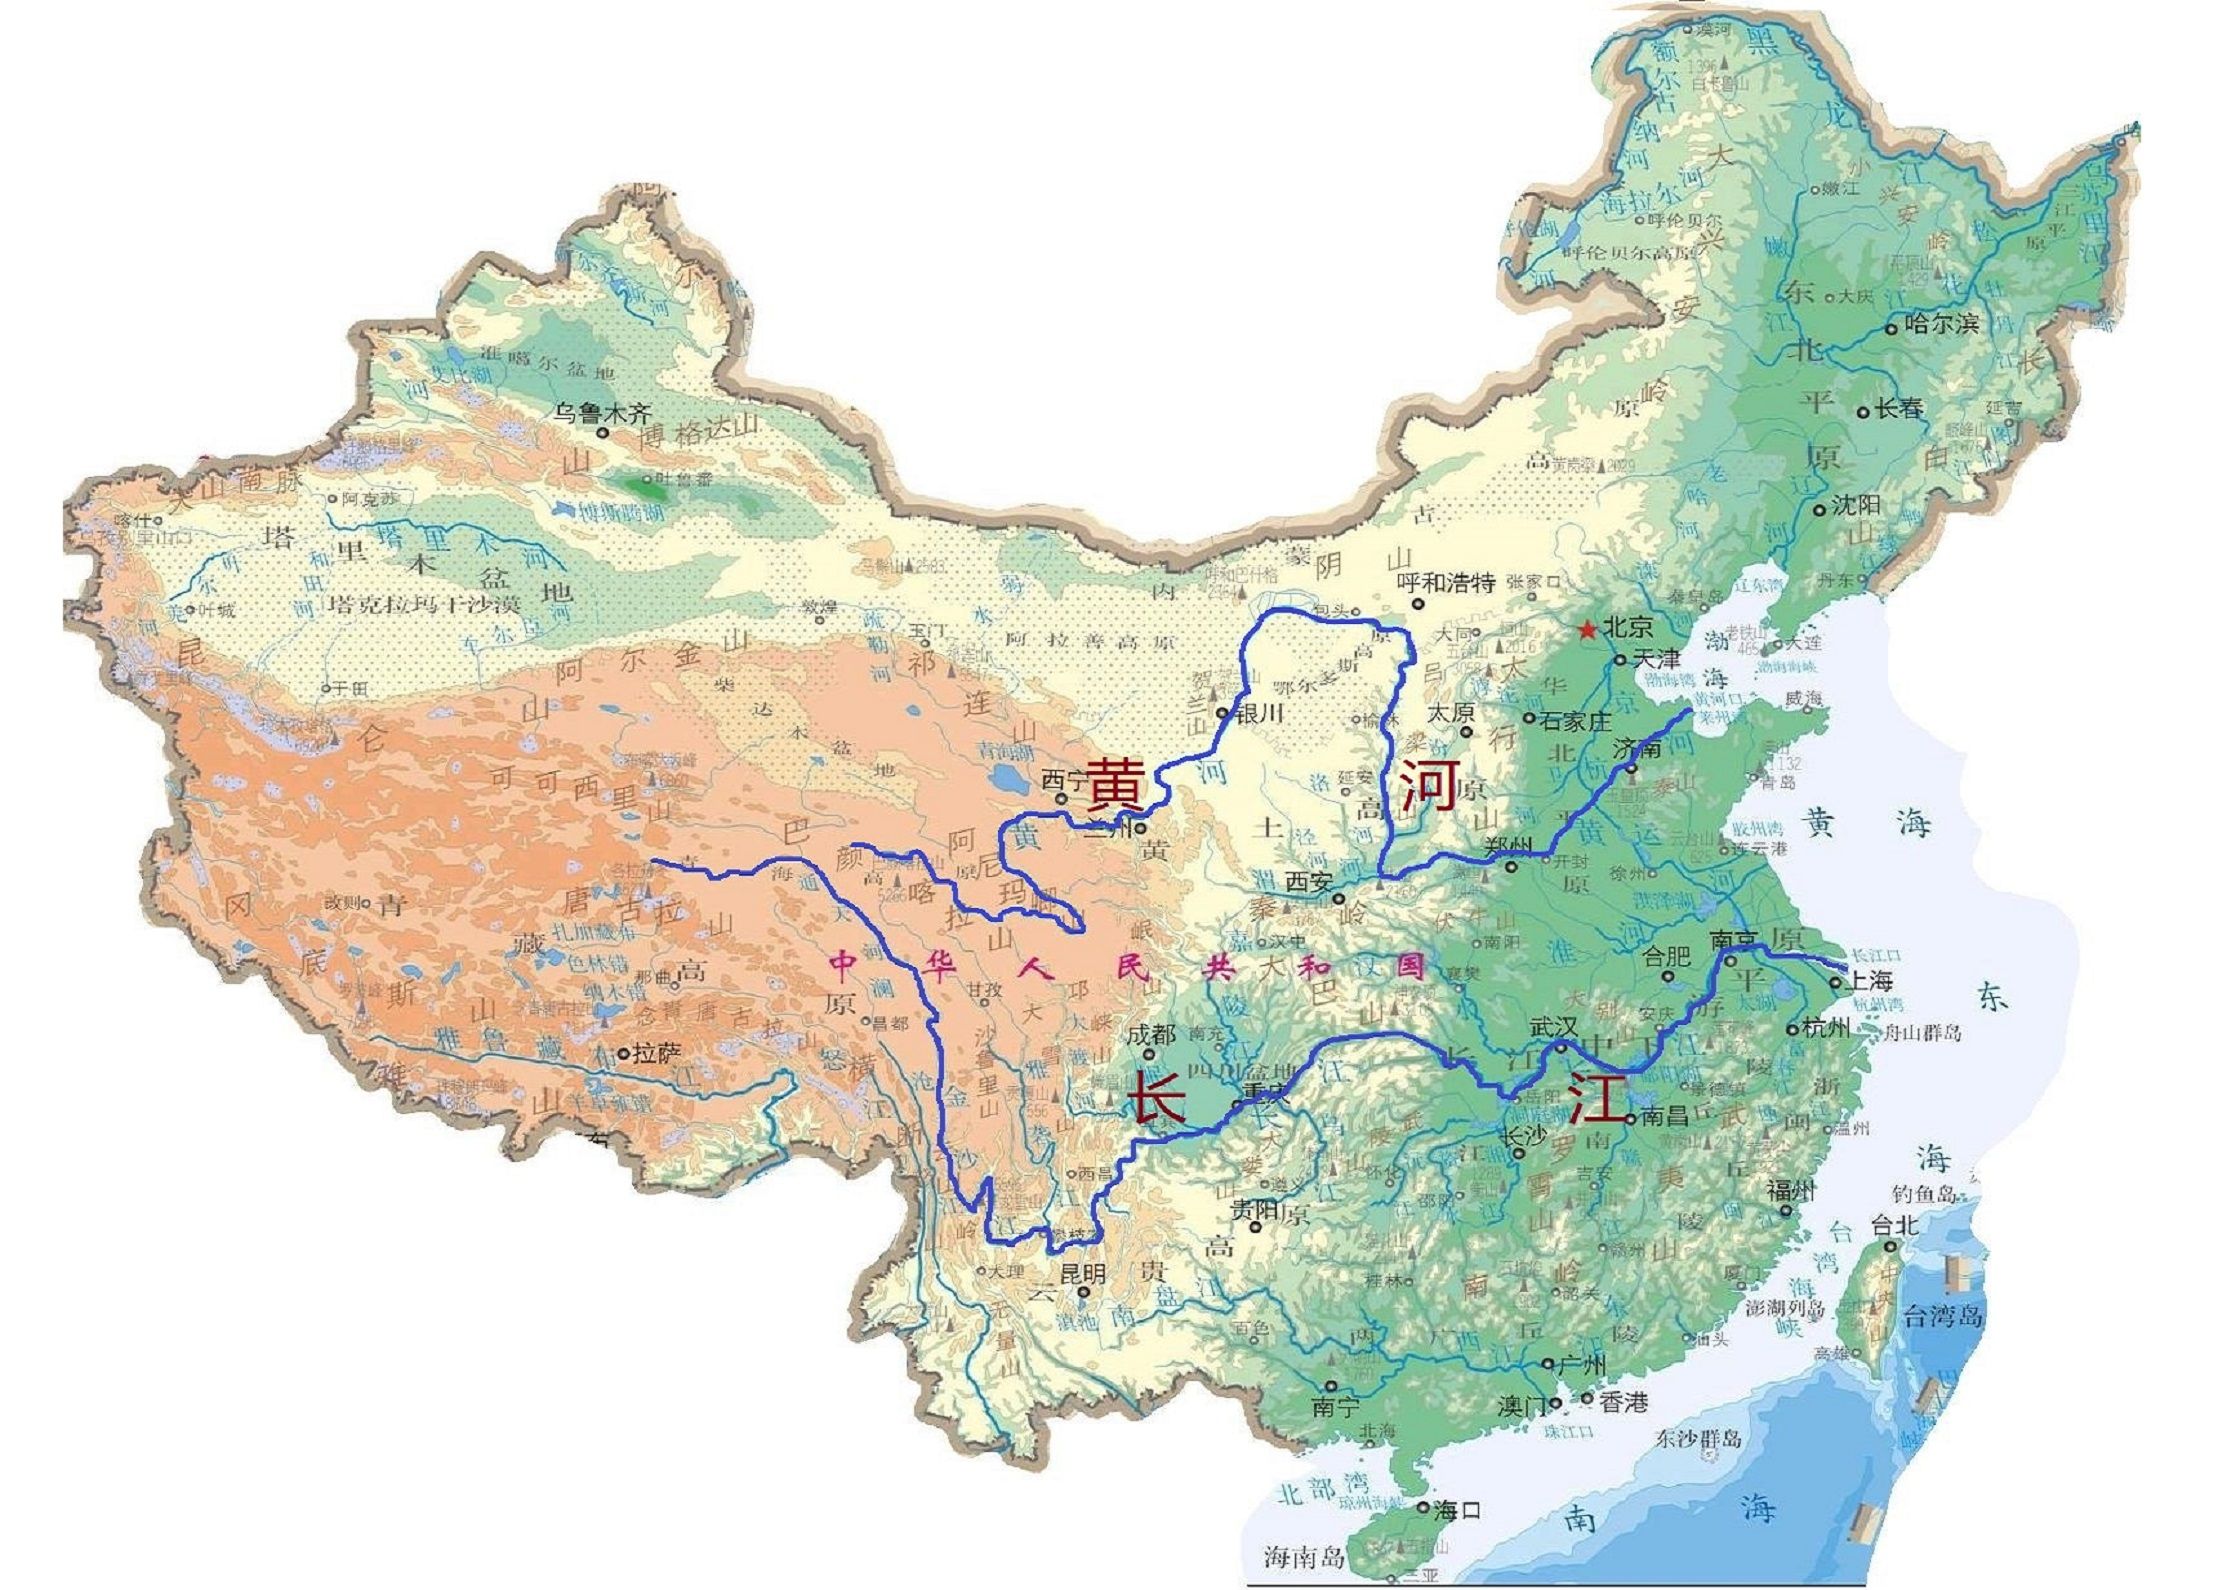 长江和黄河两条母亲河的干流都流经的省区